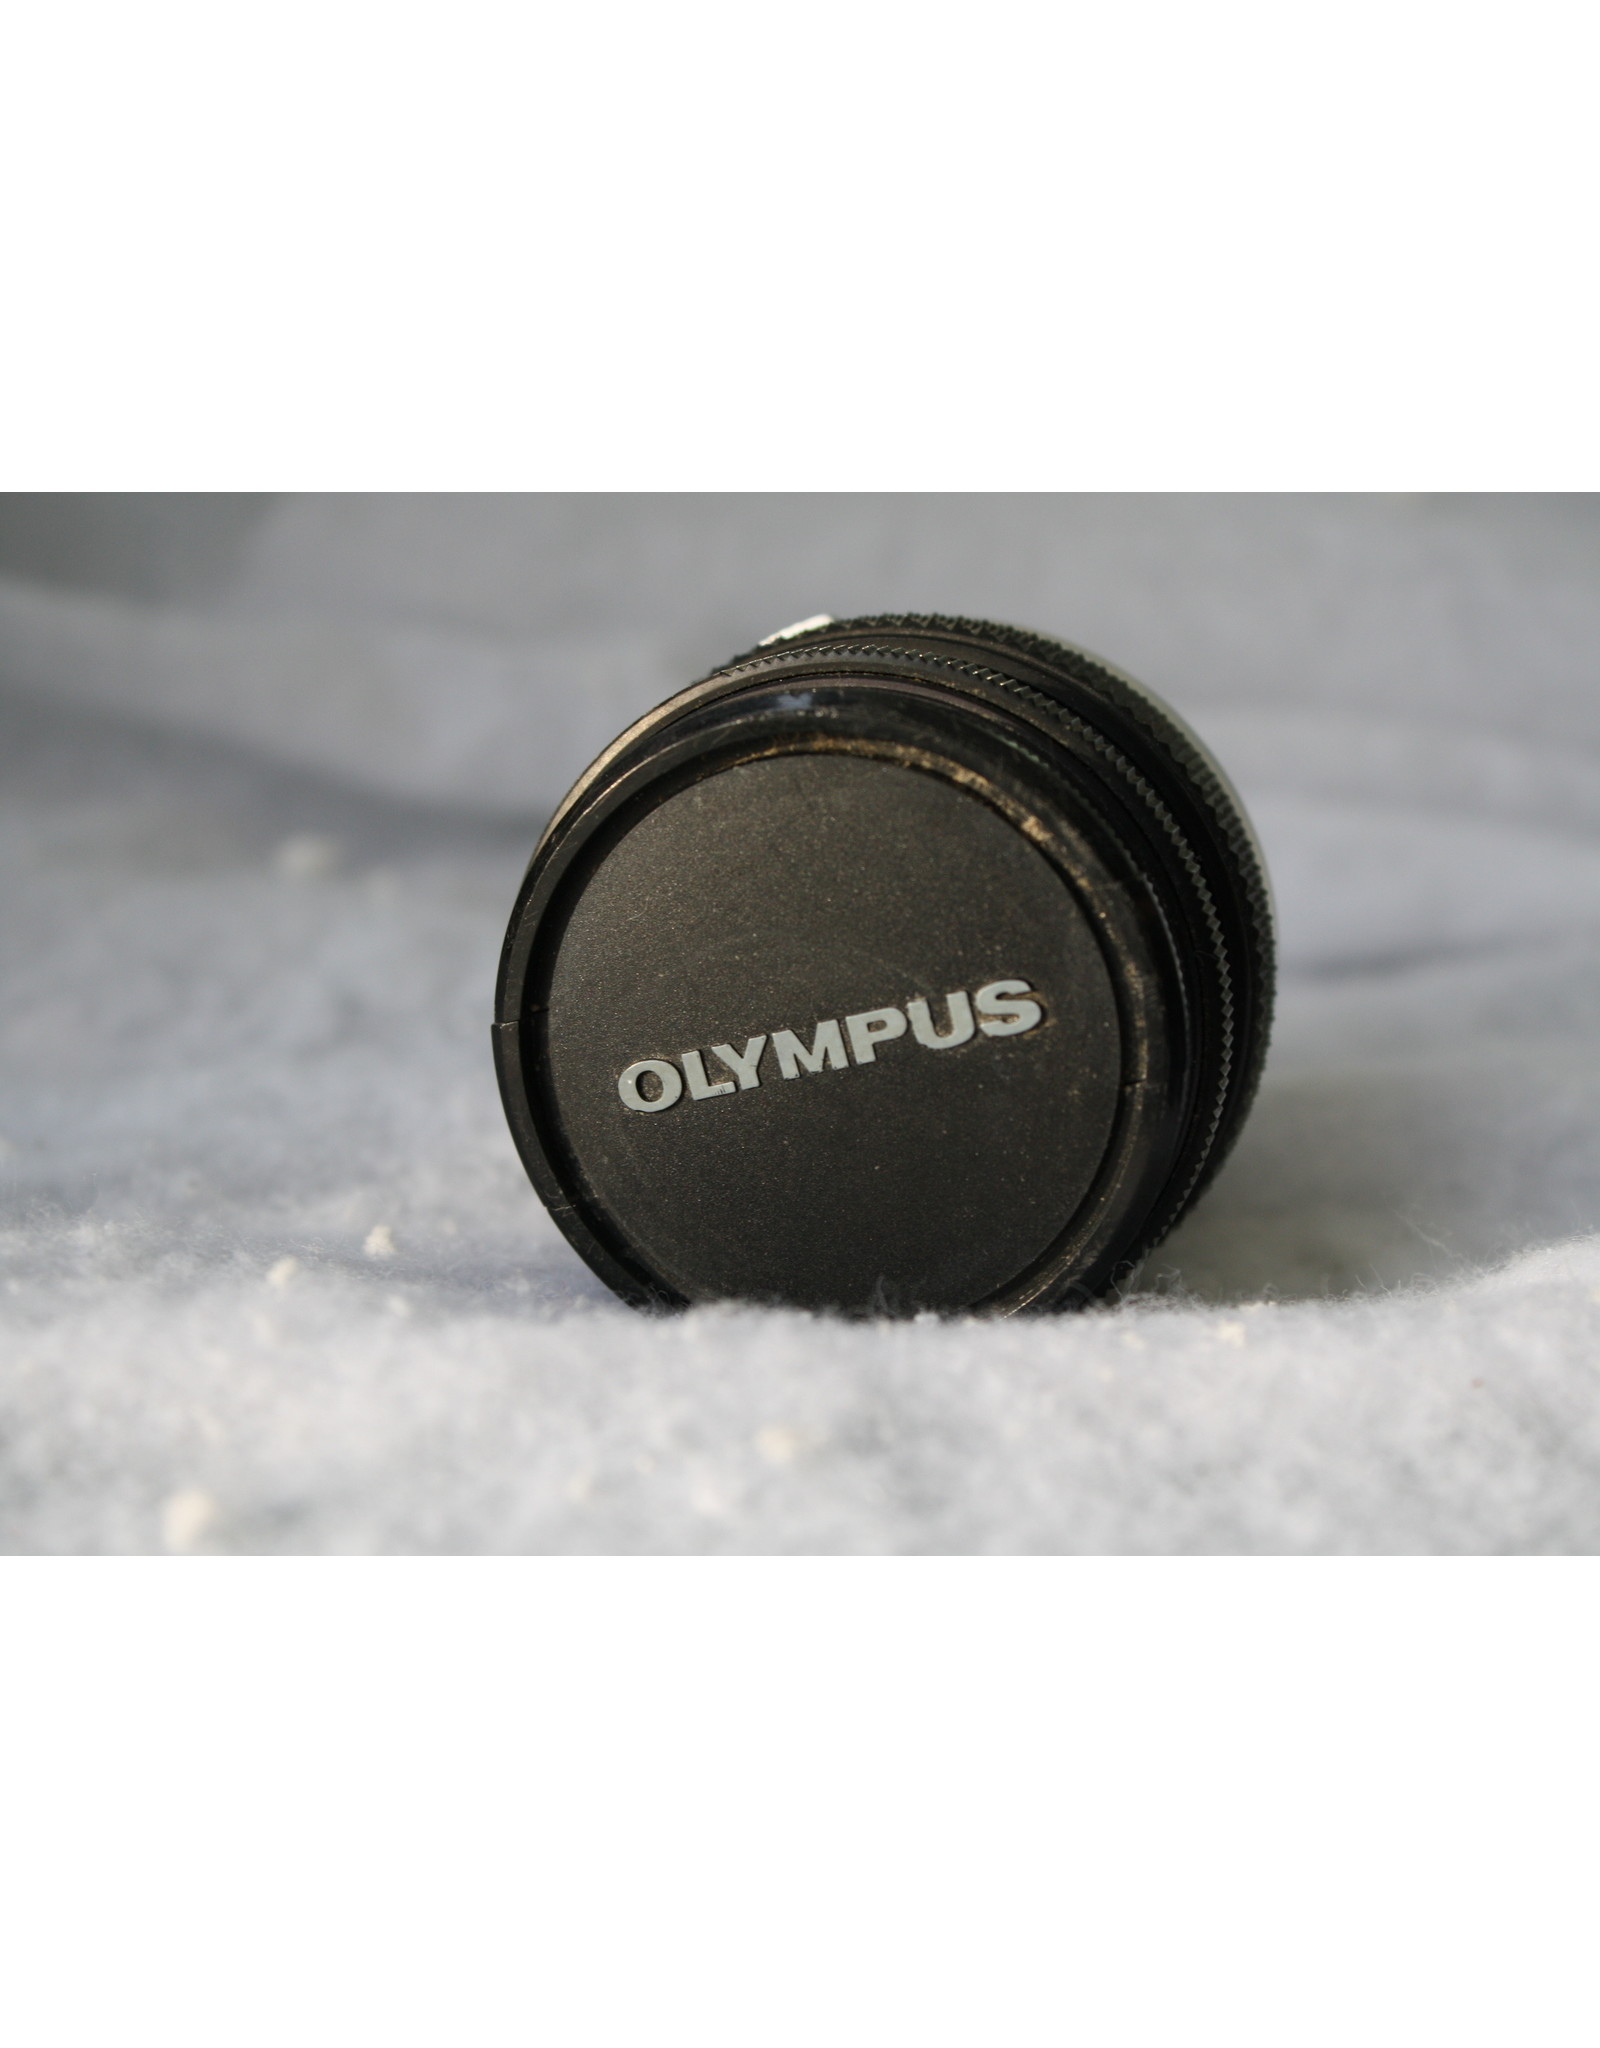 Olympus Zuiko 50mm 1.8 (Pre-owned)